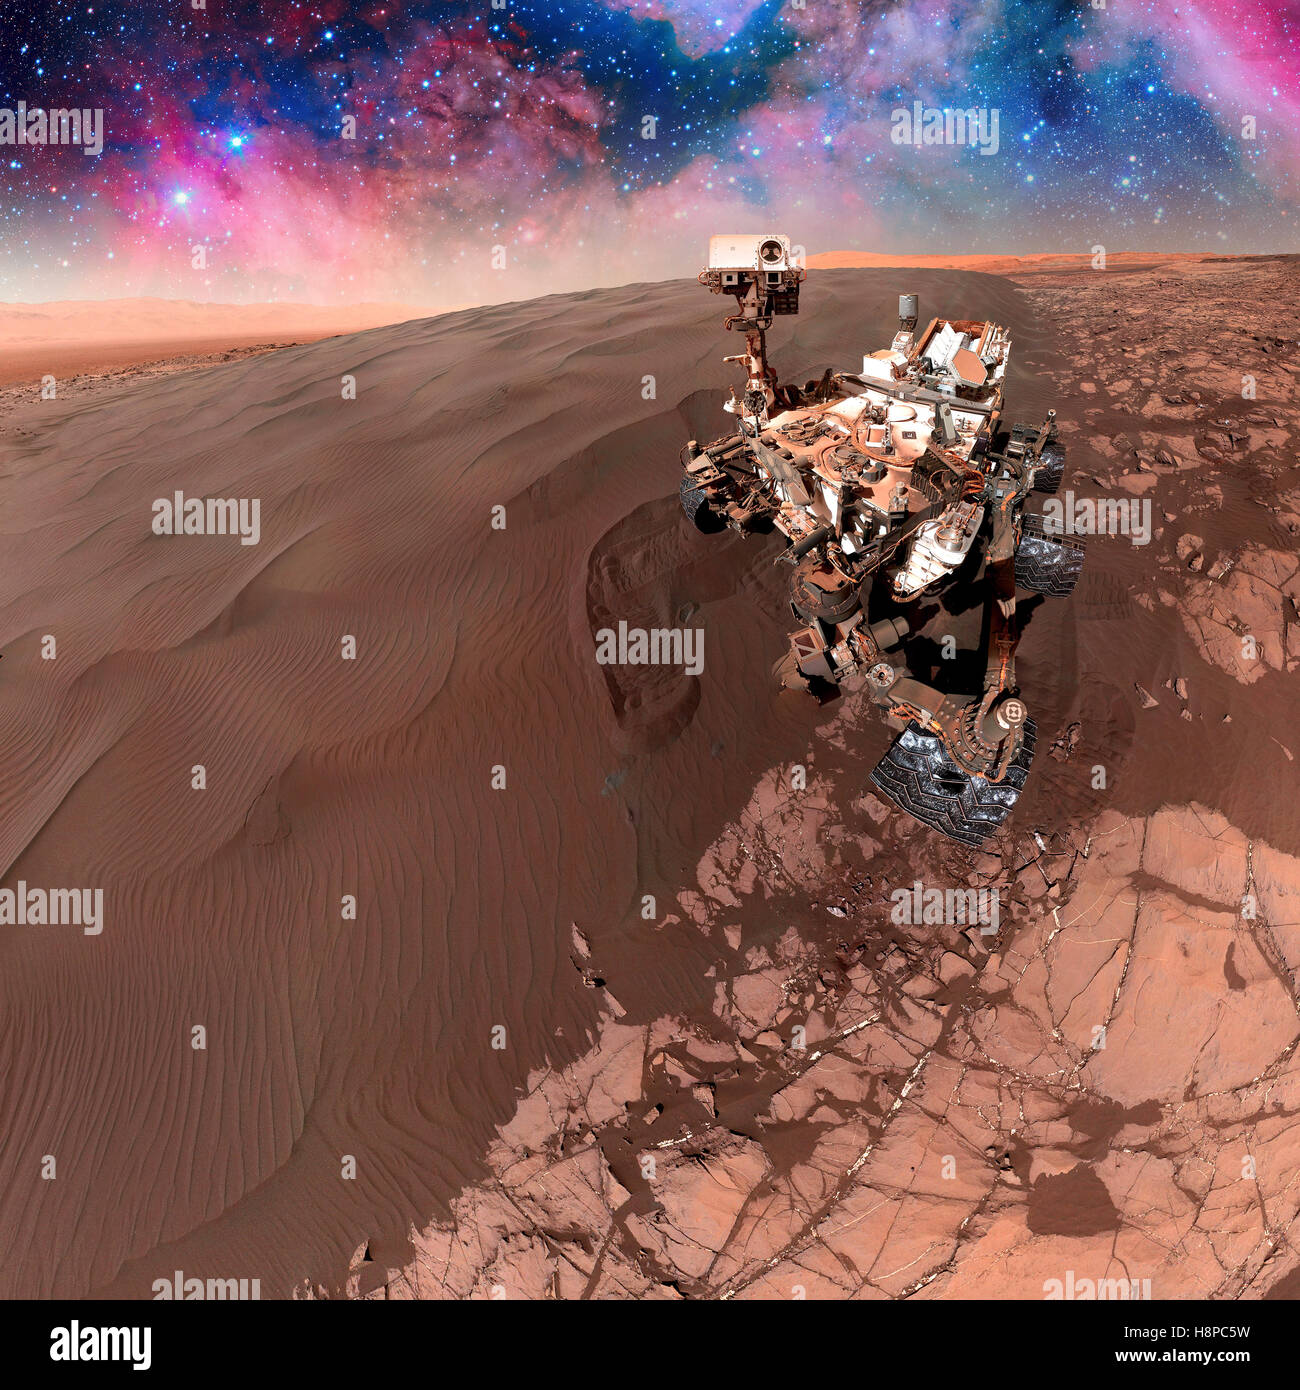 Curiosità rover esplorando la superficie di Marte. Foto Stock